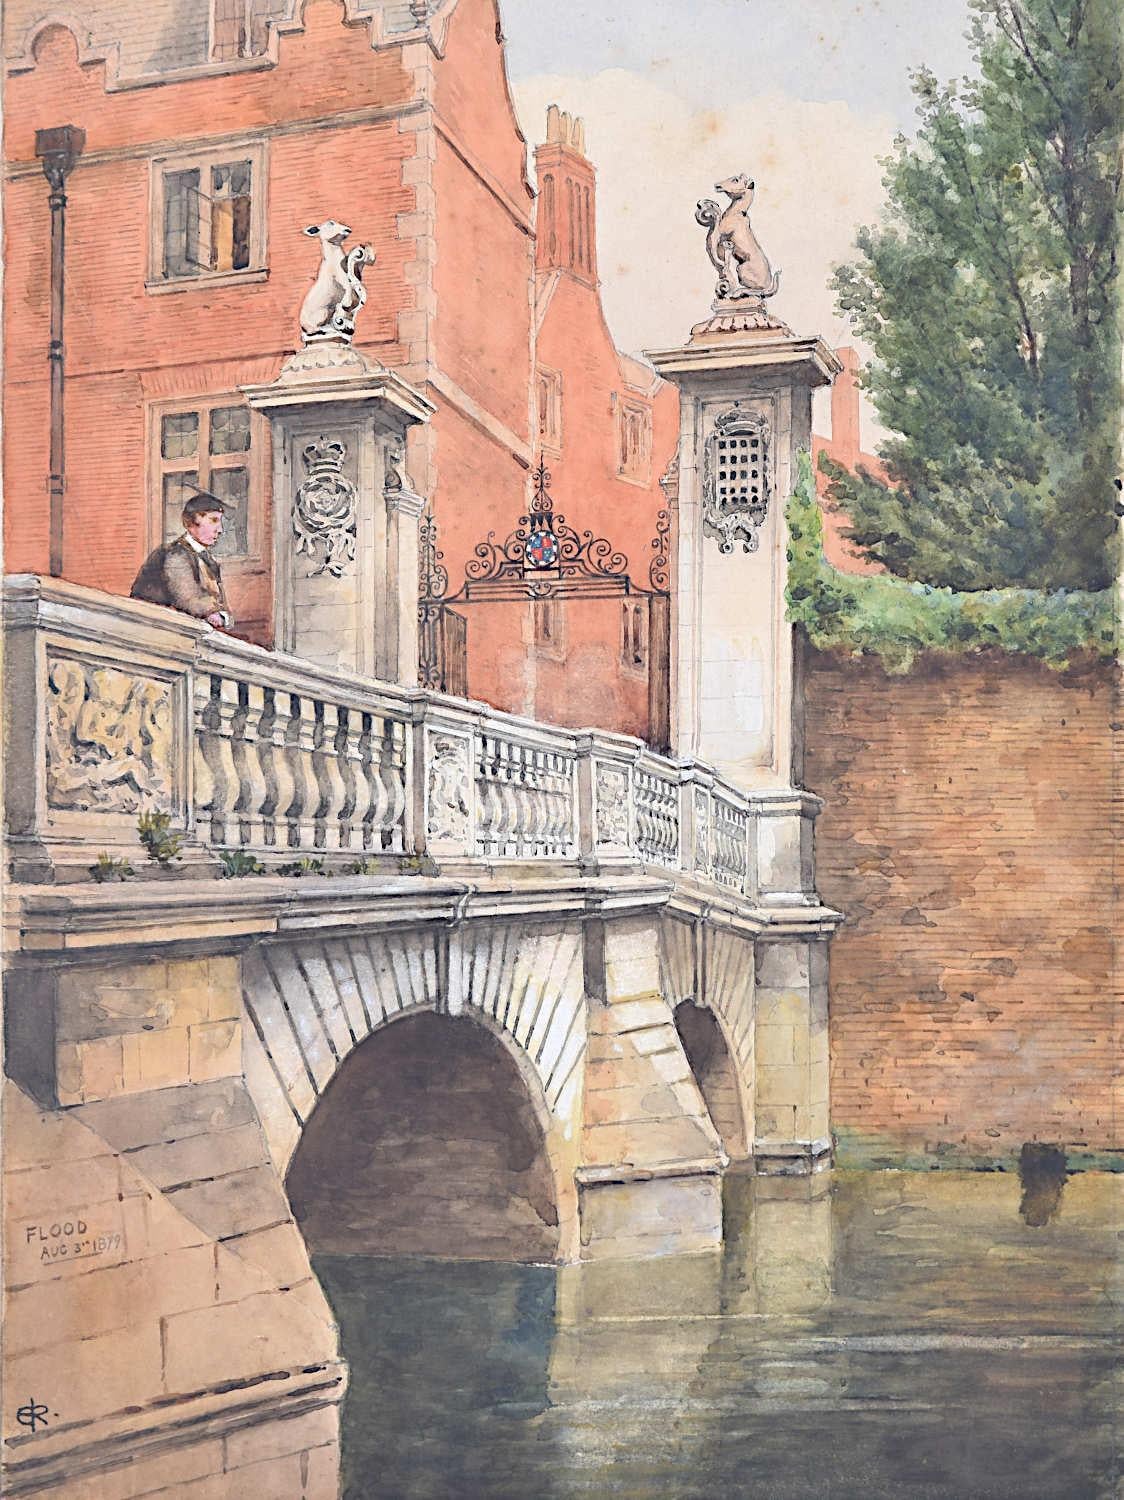 St John's College Cambridge Edwardian watercolour Wren Bridge River Cam c. 1900